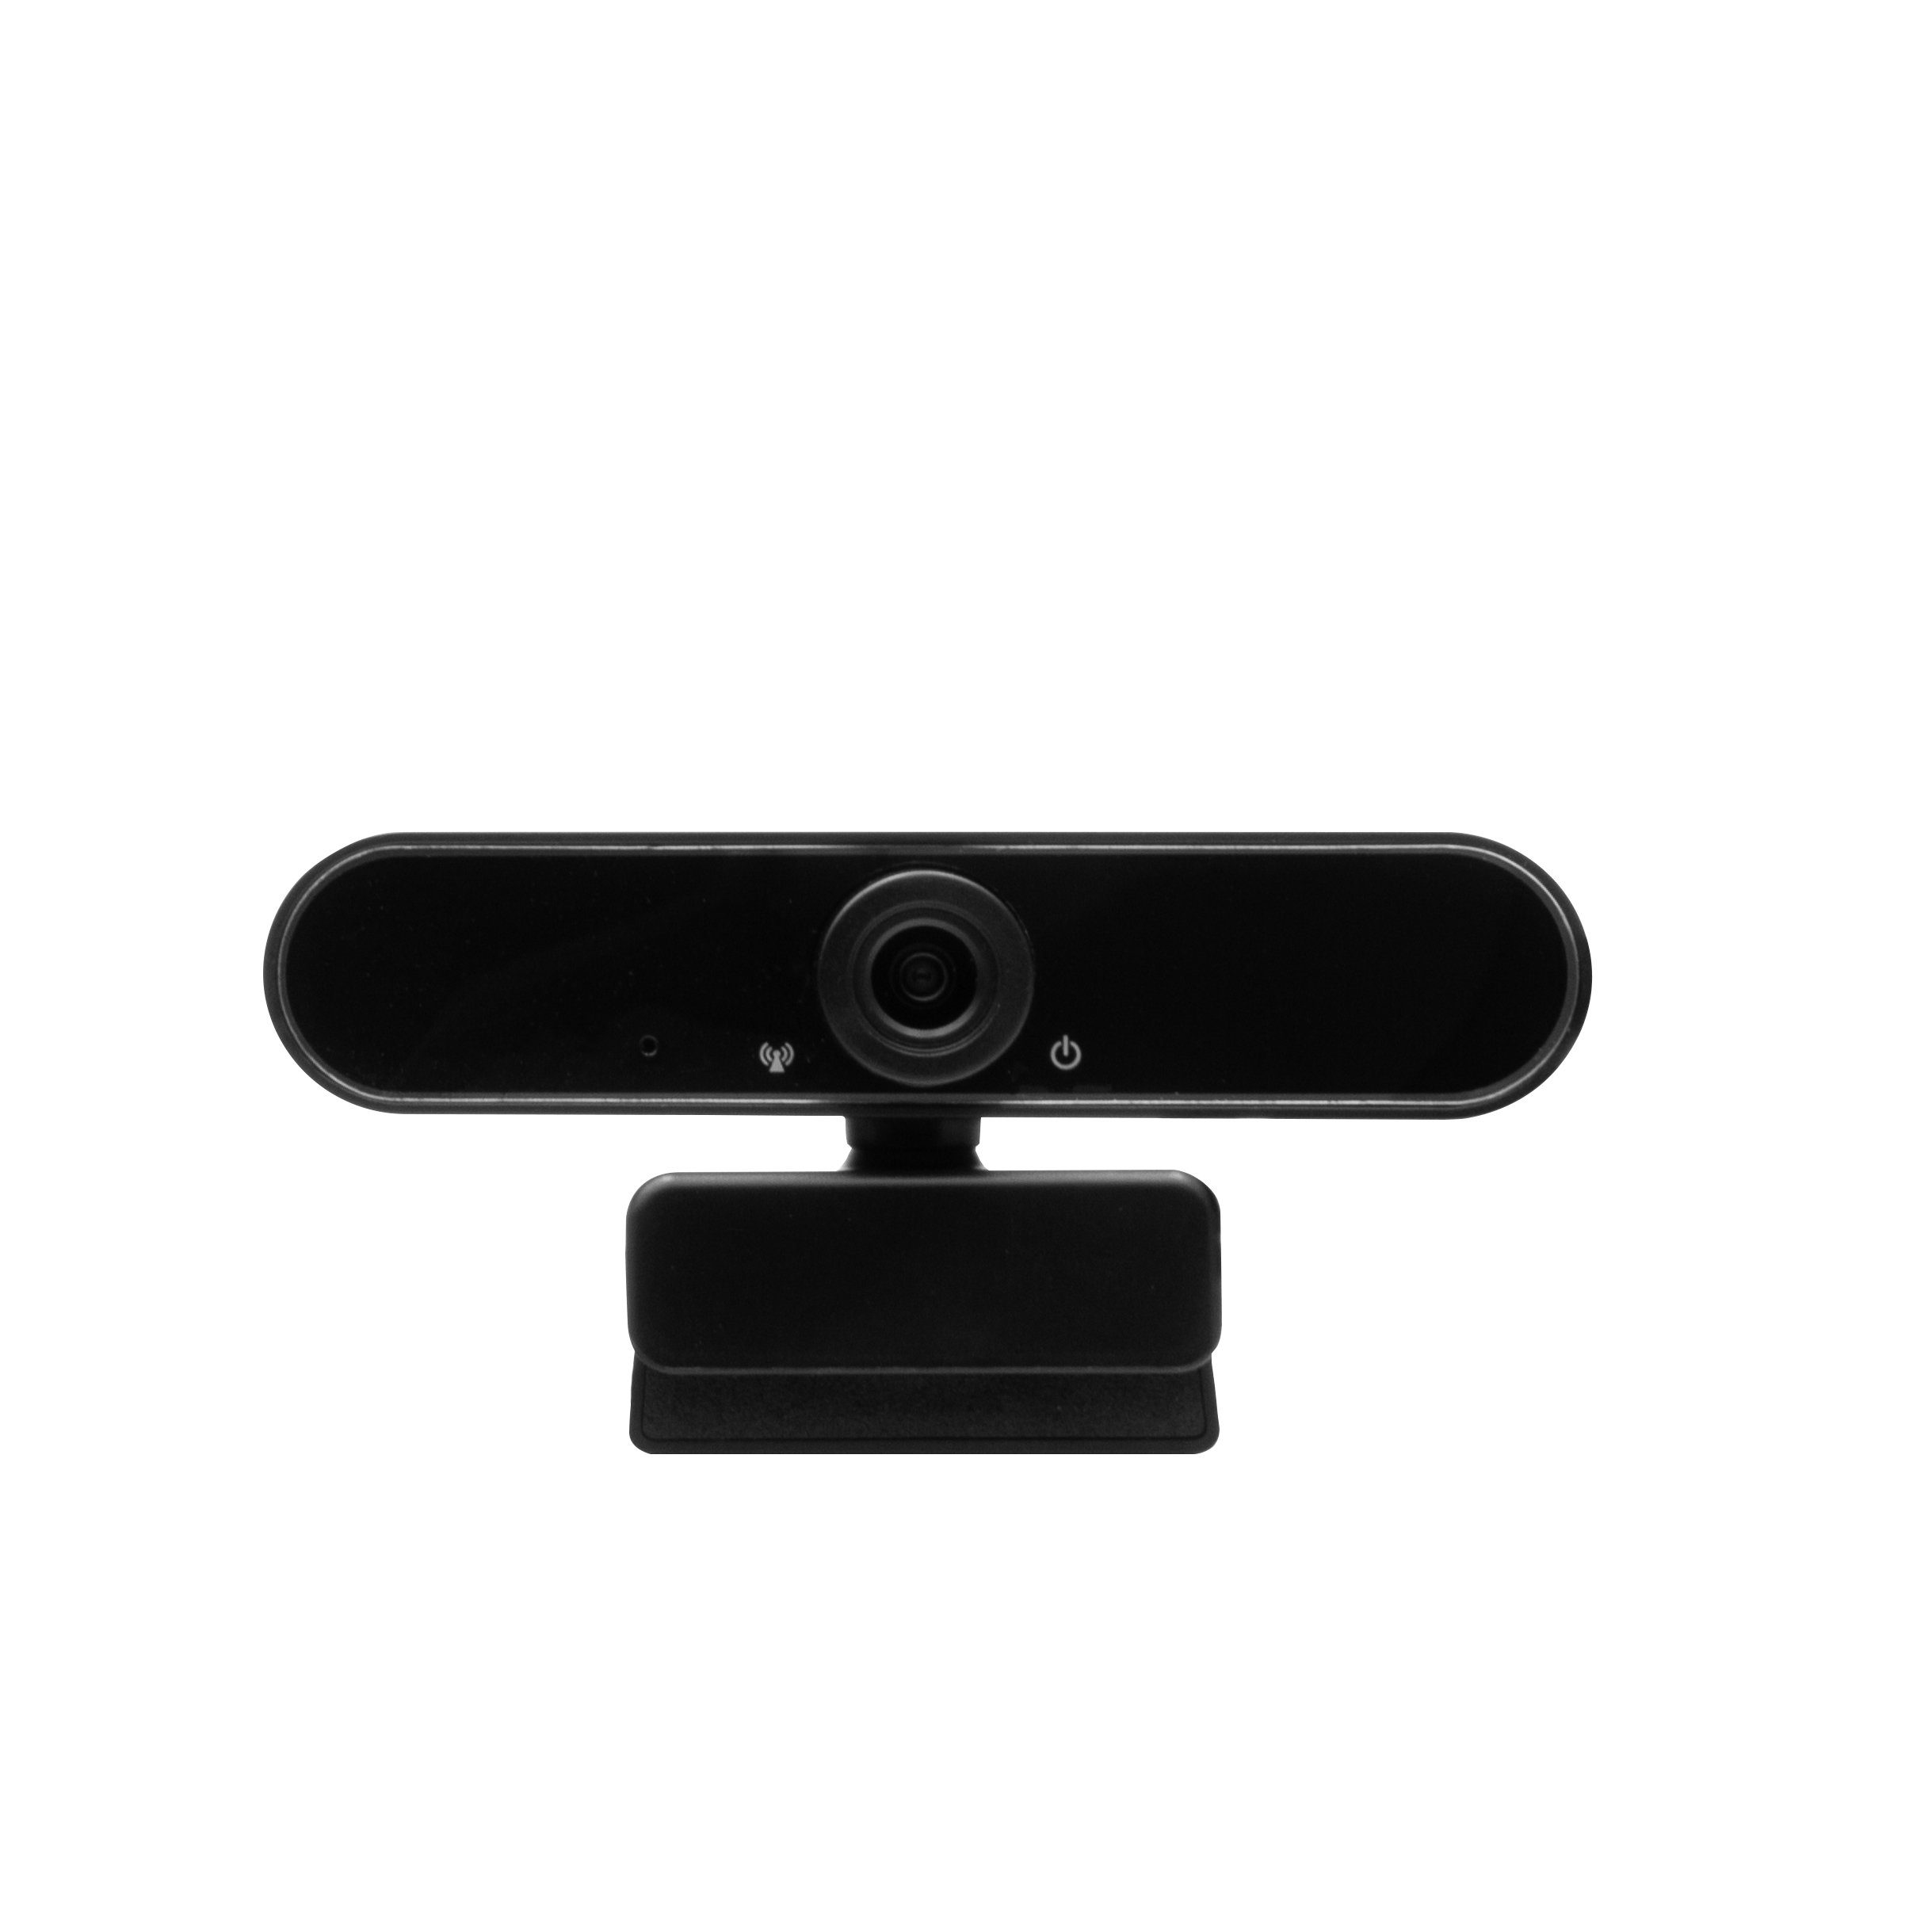 Hyrican Striker Streamer Startup Collection kabelgebunden, + ST-GH530 + ST-SM50 Eingabegeräte-Set, Studio Mikrofon DW1 + Headset USB, Webcam + schwarz